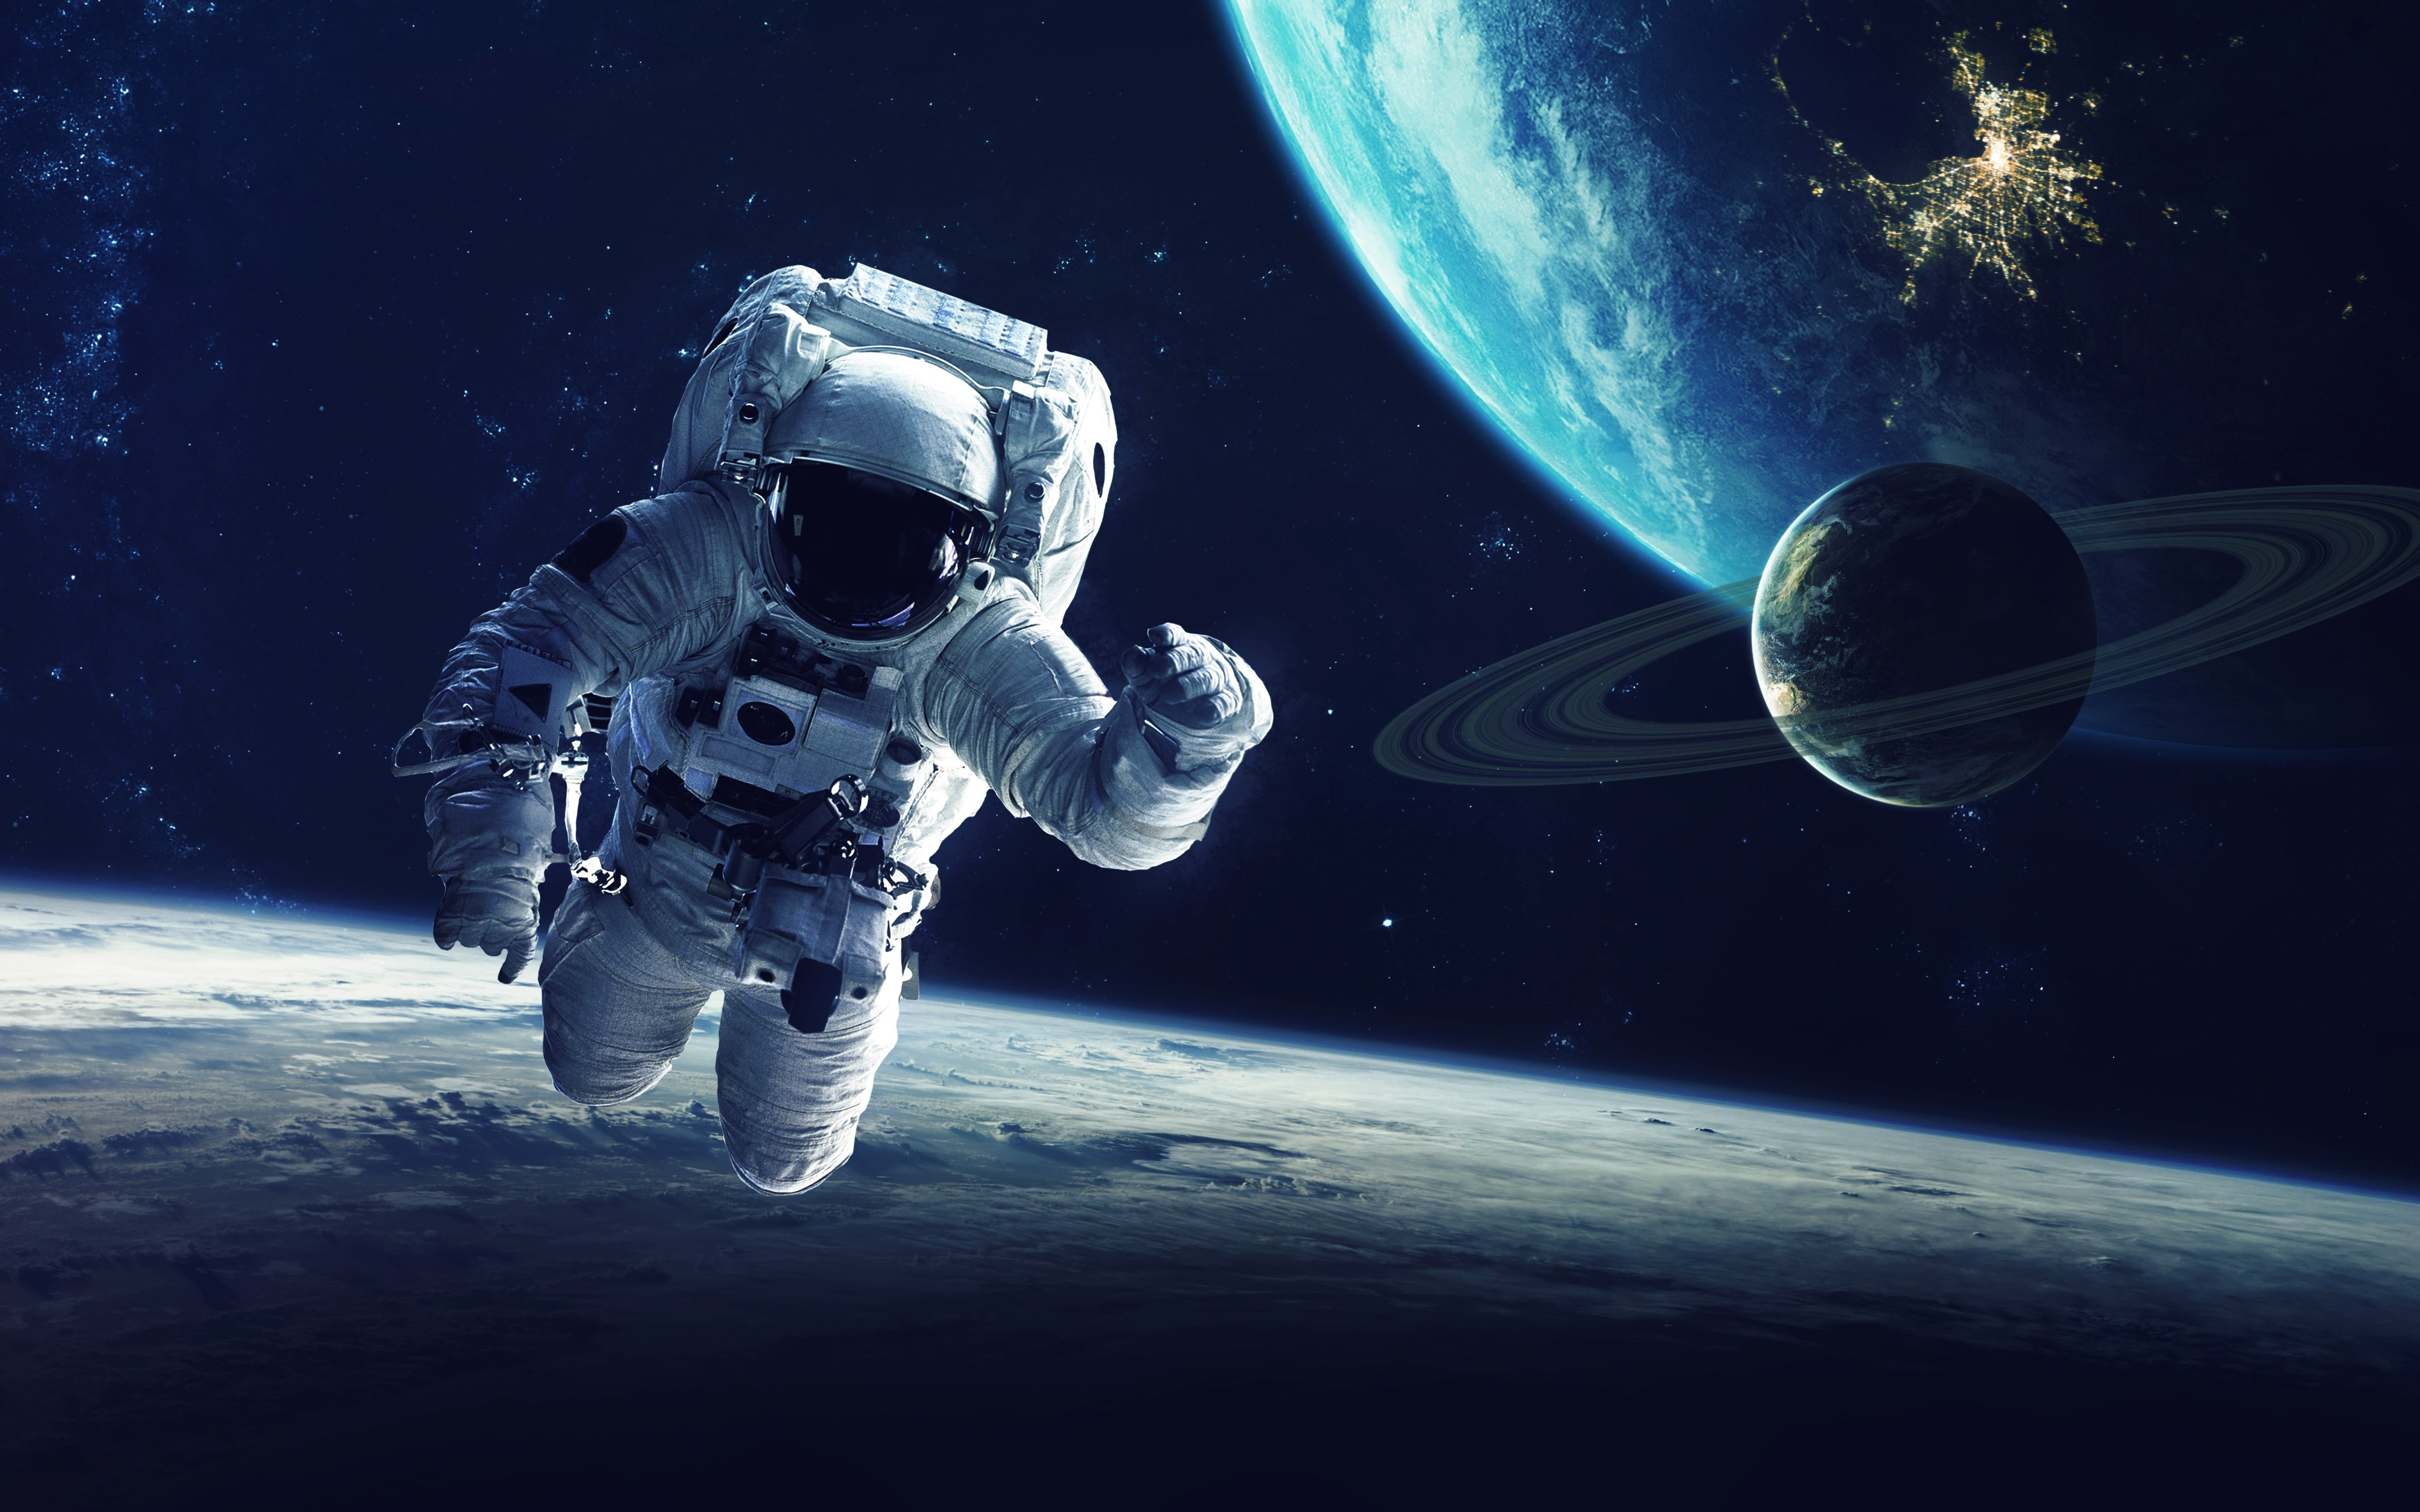 white astronaut suit, astronaut, planet, space, space art